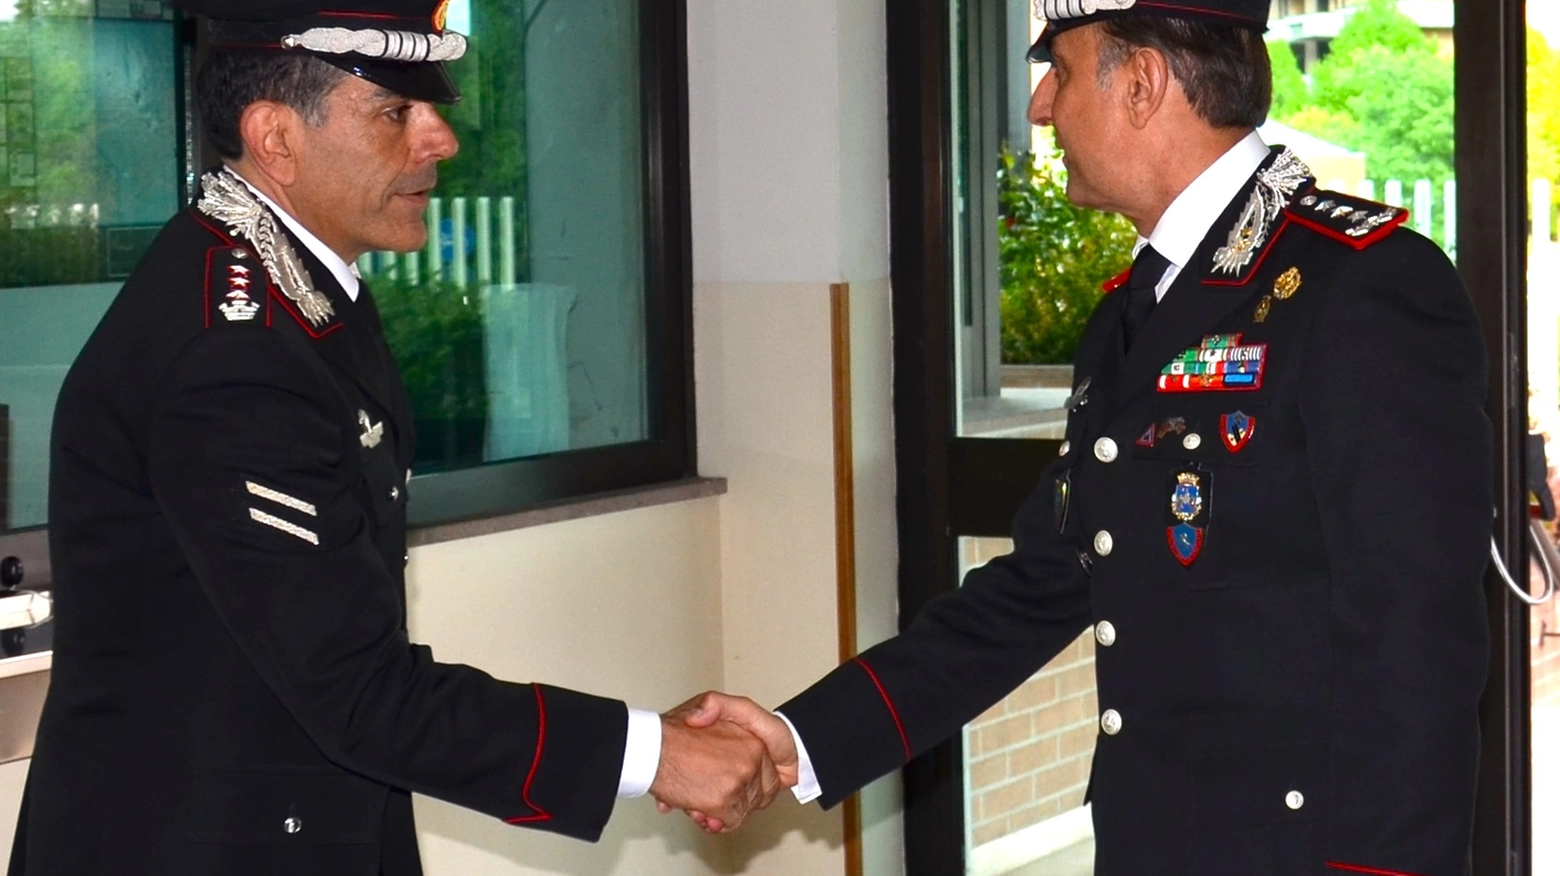 Carabinieri, in visita alla caserma intitolata alla M.O.V.M. Appuntato dei Carabinieri “Carmine Della Sala”, sede del Comando Provinciale dei Carabinieri di Arezzo